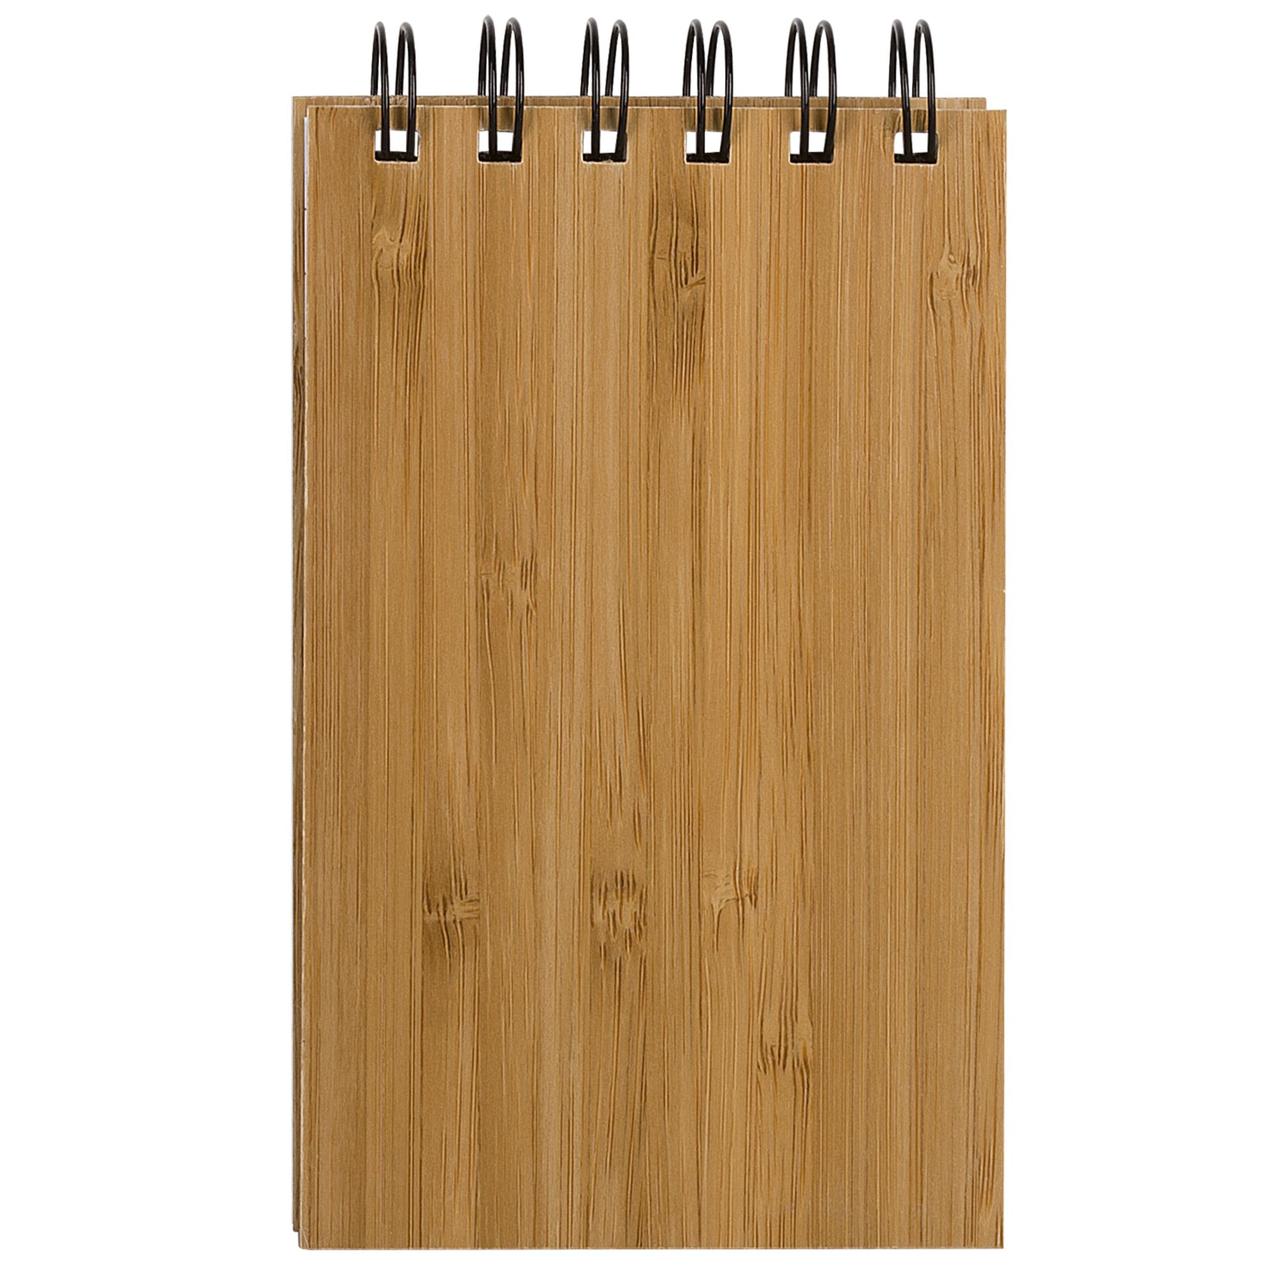 Блокнот на кольцах Bamboo Simple (артикул 6583), фото 1